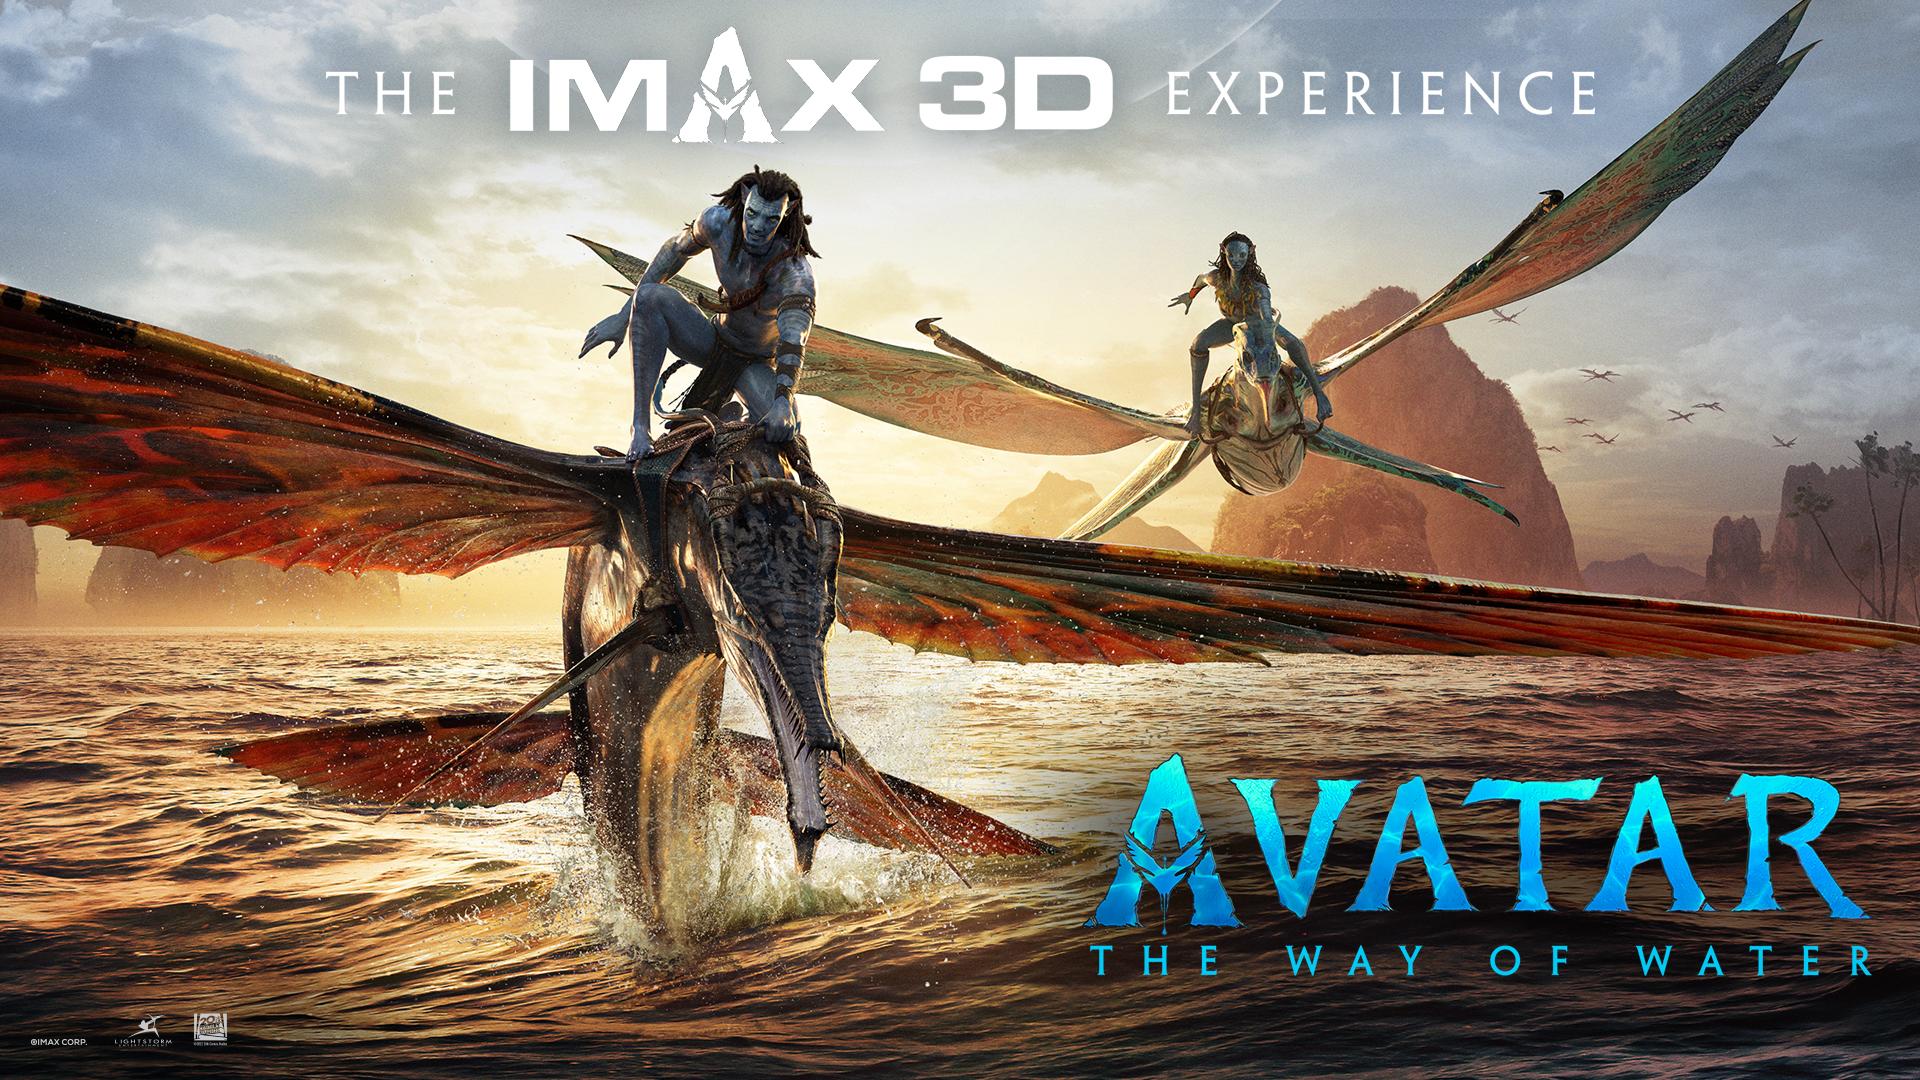 Định dạng nào là tốt nhất hiện nay để thưởng thức trọn vẹn “Avatar 2”? - Ảnh 2.